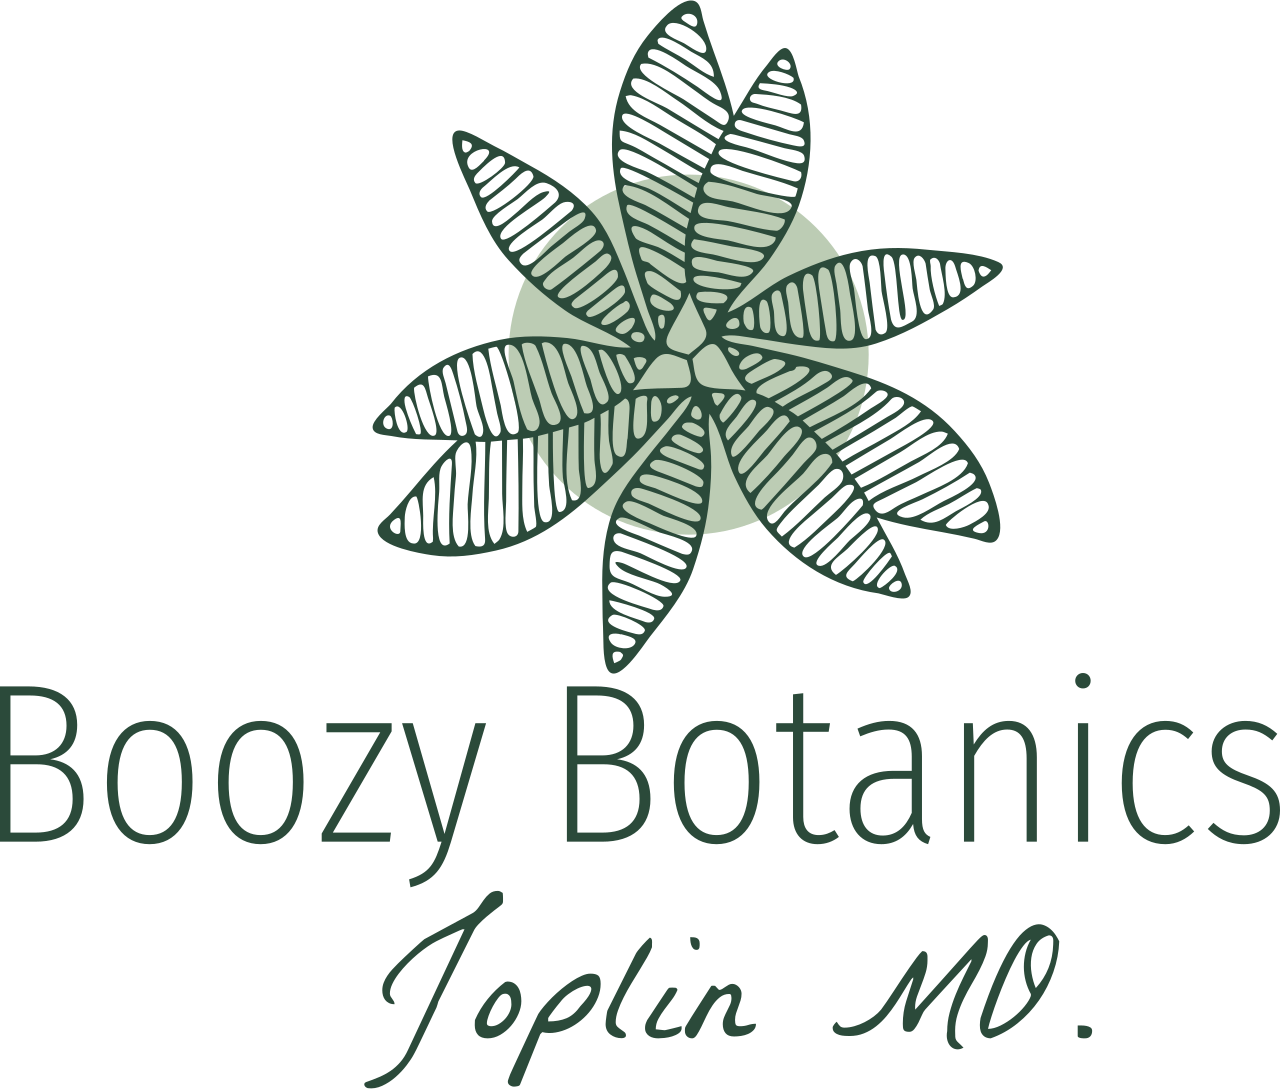 Boozy Botanics's logo